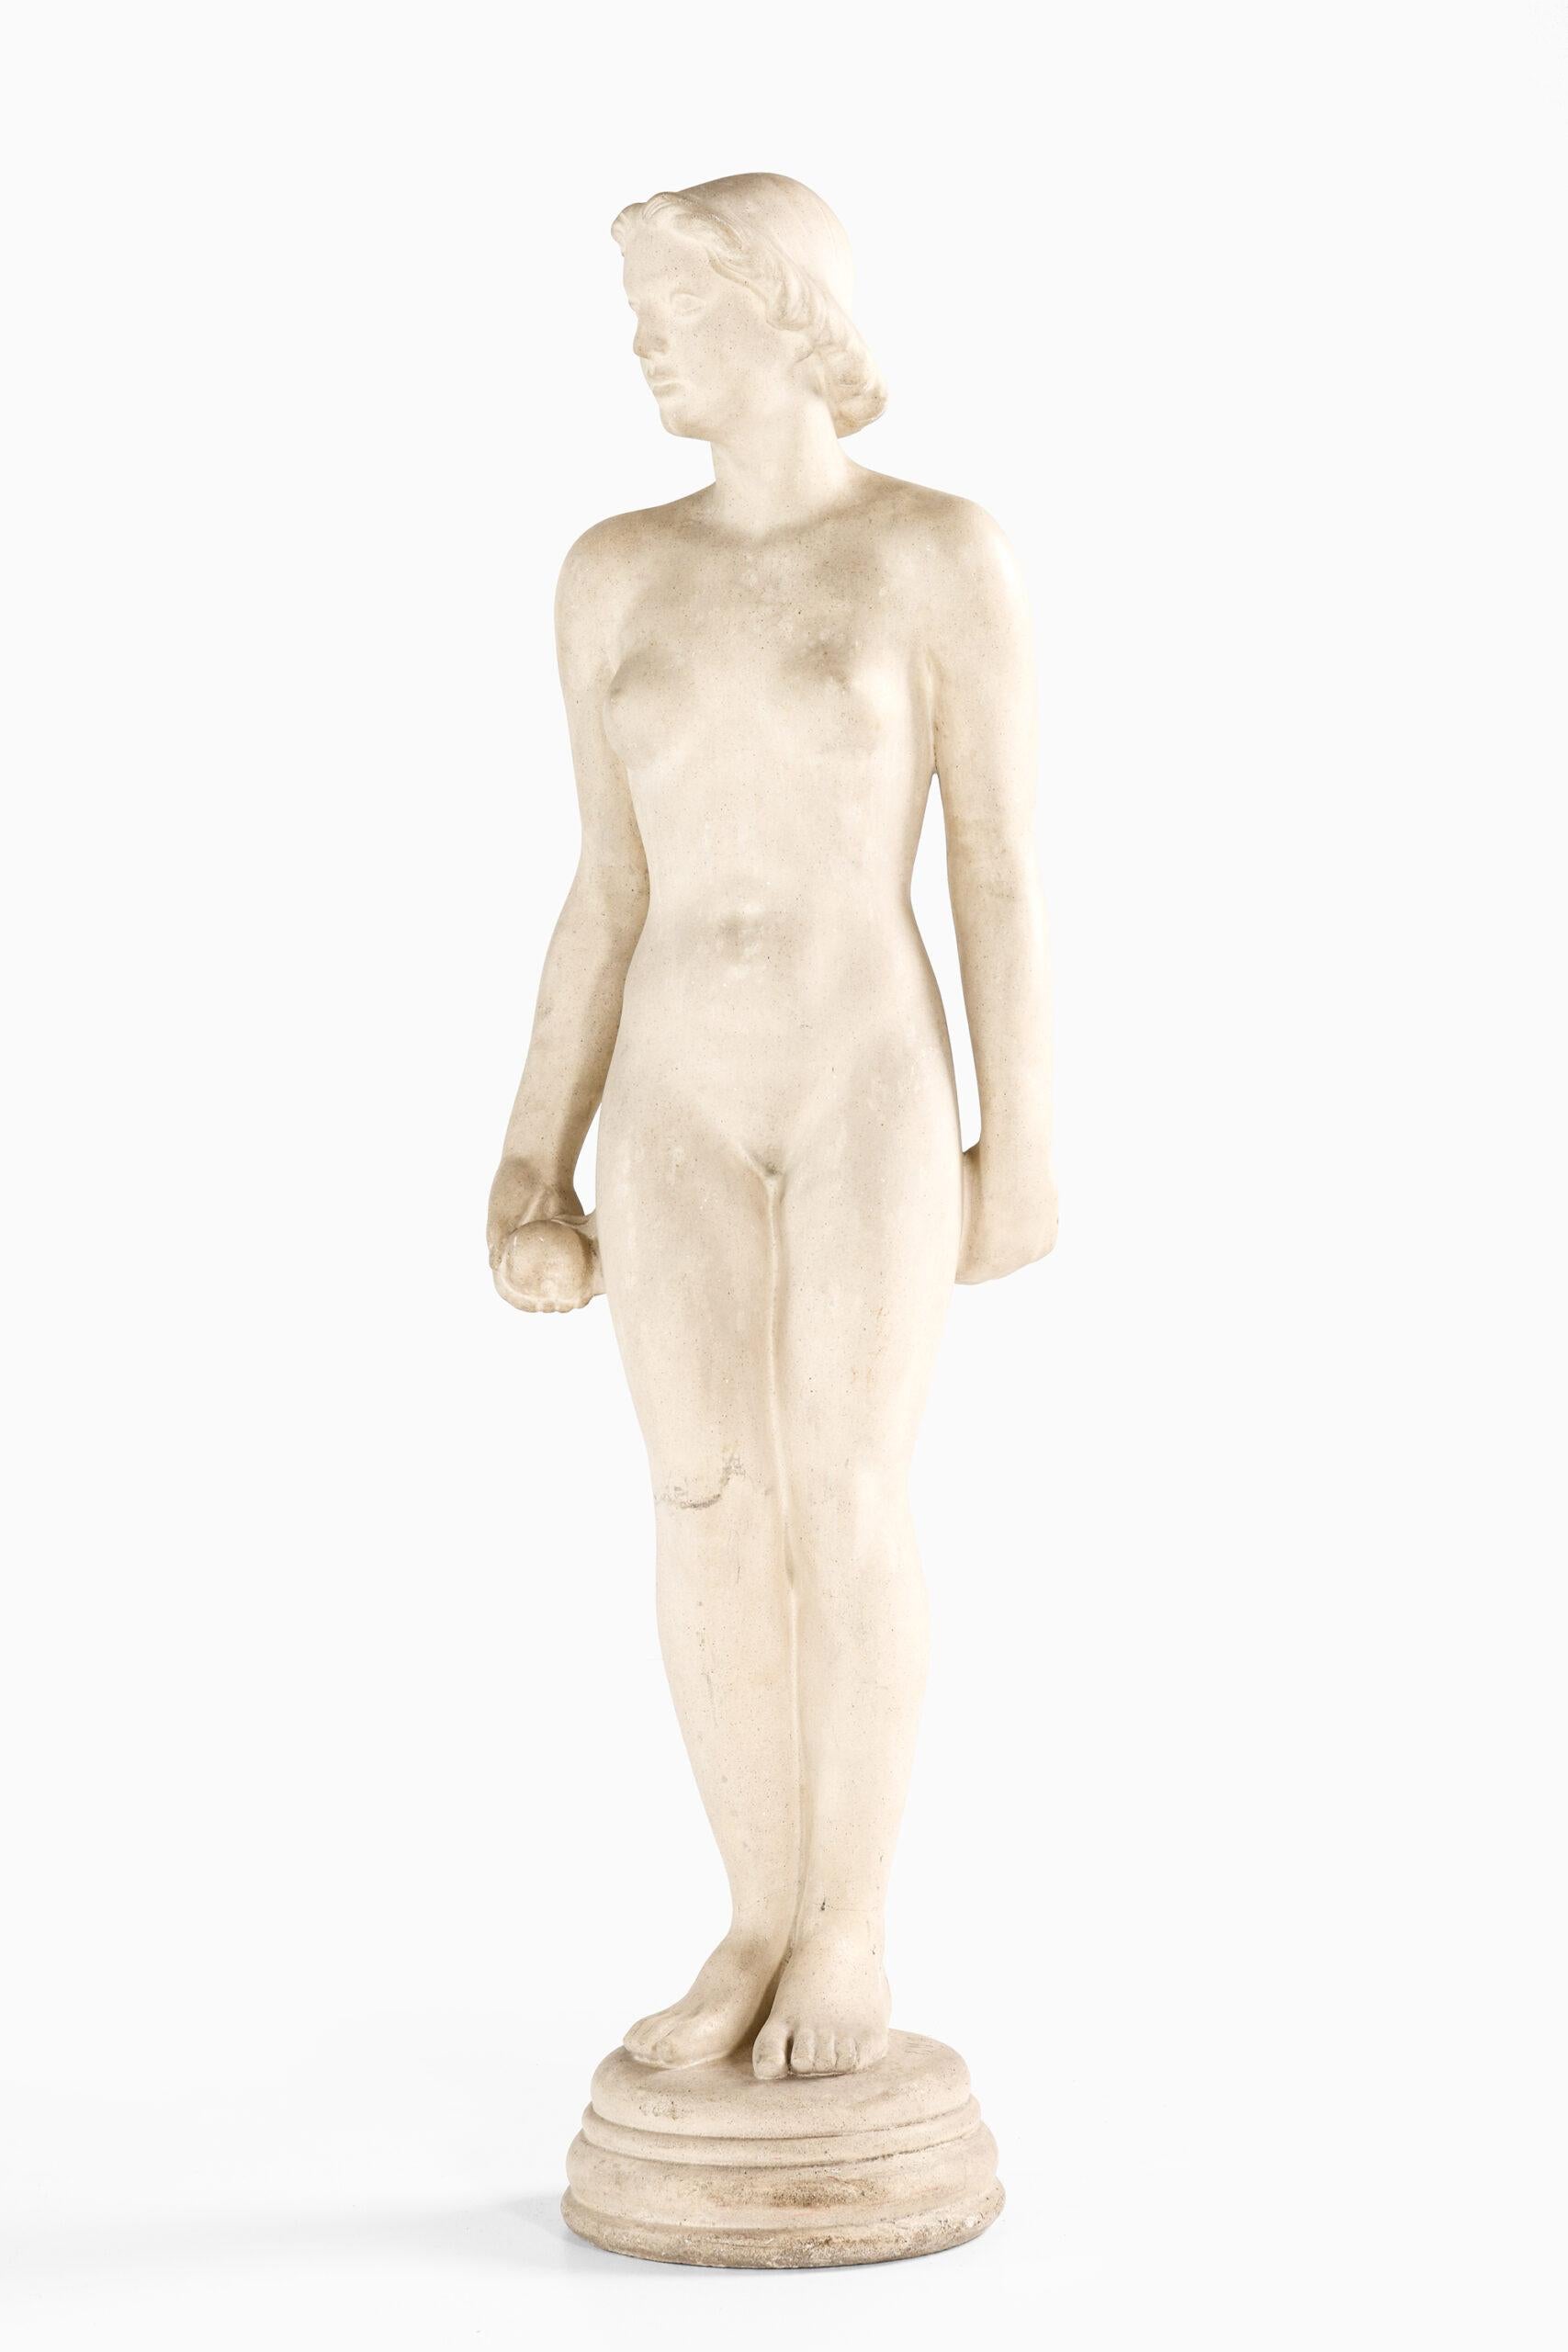 Mathilius Schack Elo Garden Sculpture ‘Eva’ Produced in Denmark For Sale 1